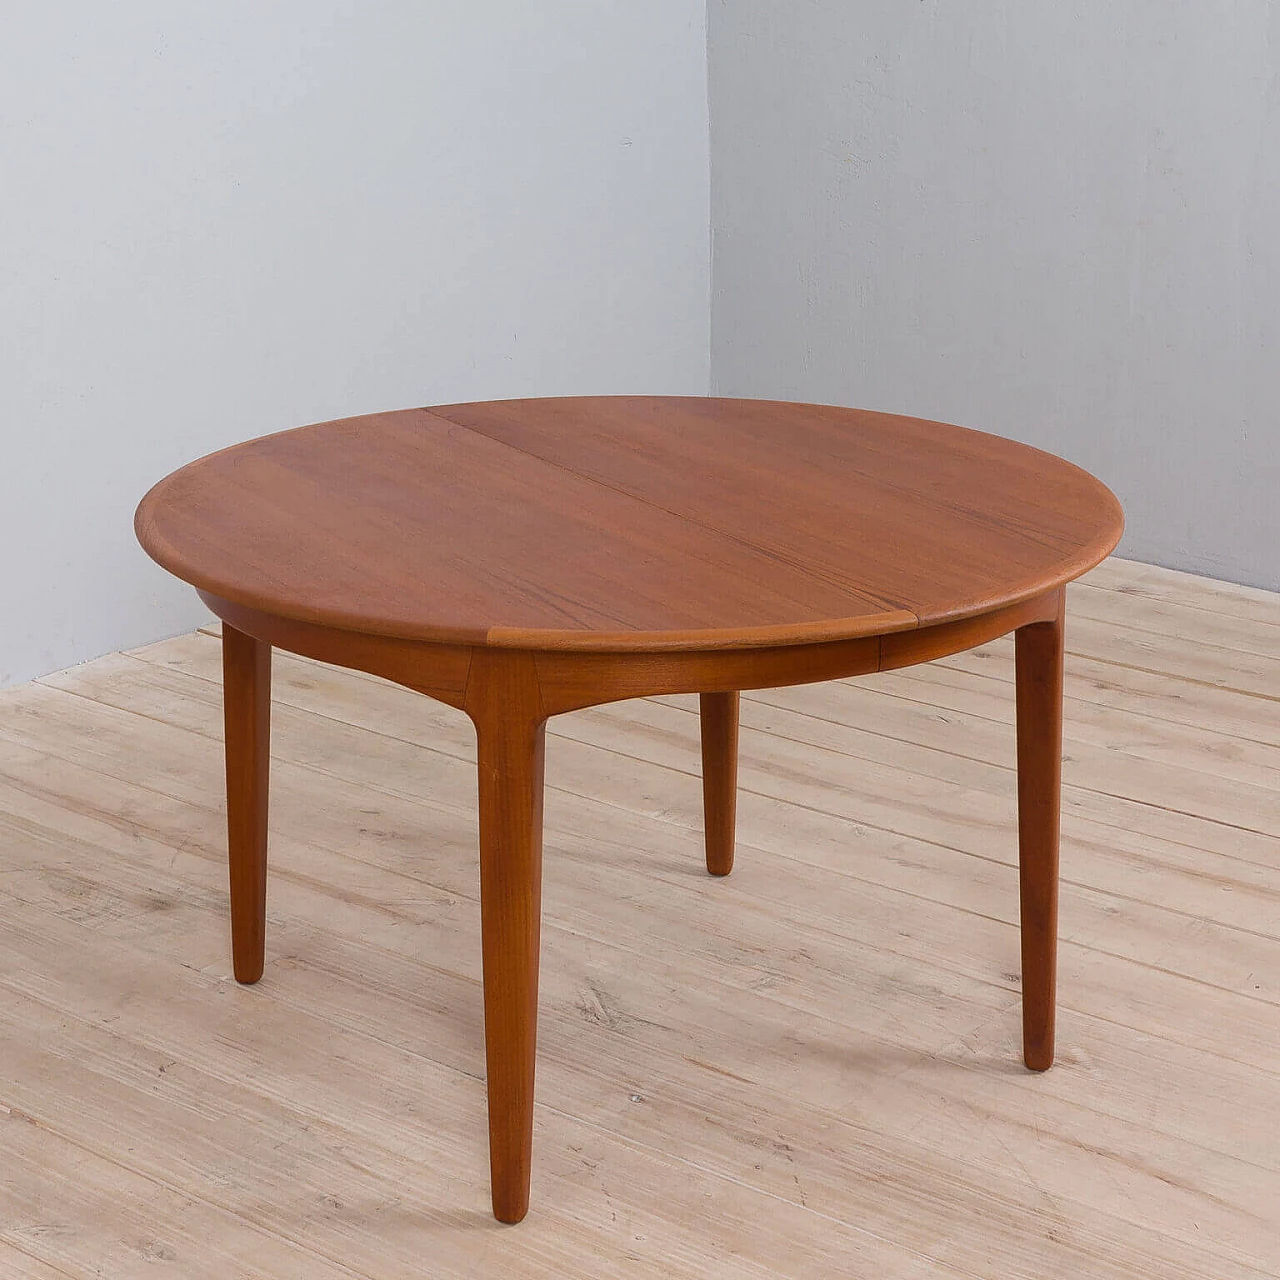 Round extendable table model 62 in teak by Henning Kjaernulf For Sorø Stolefabrik, 60s 1476120